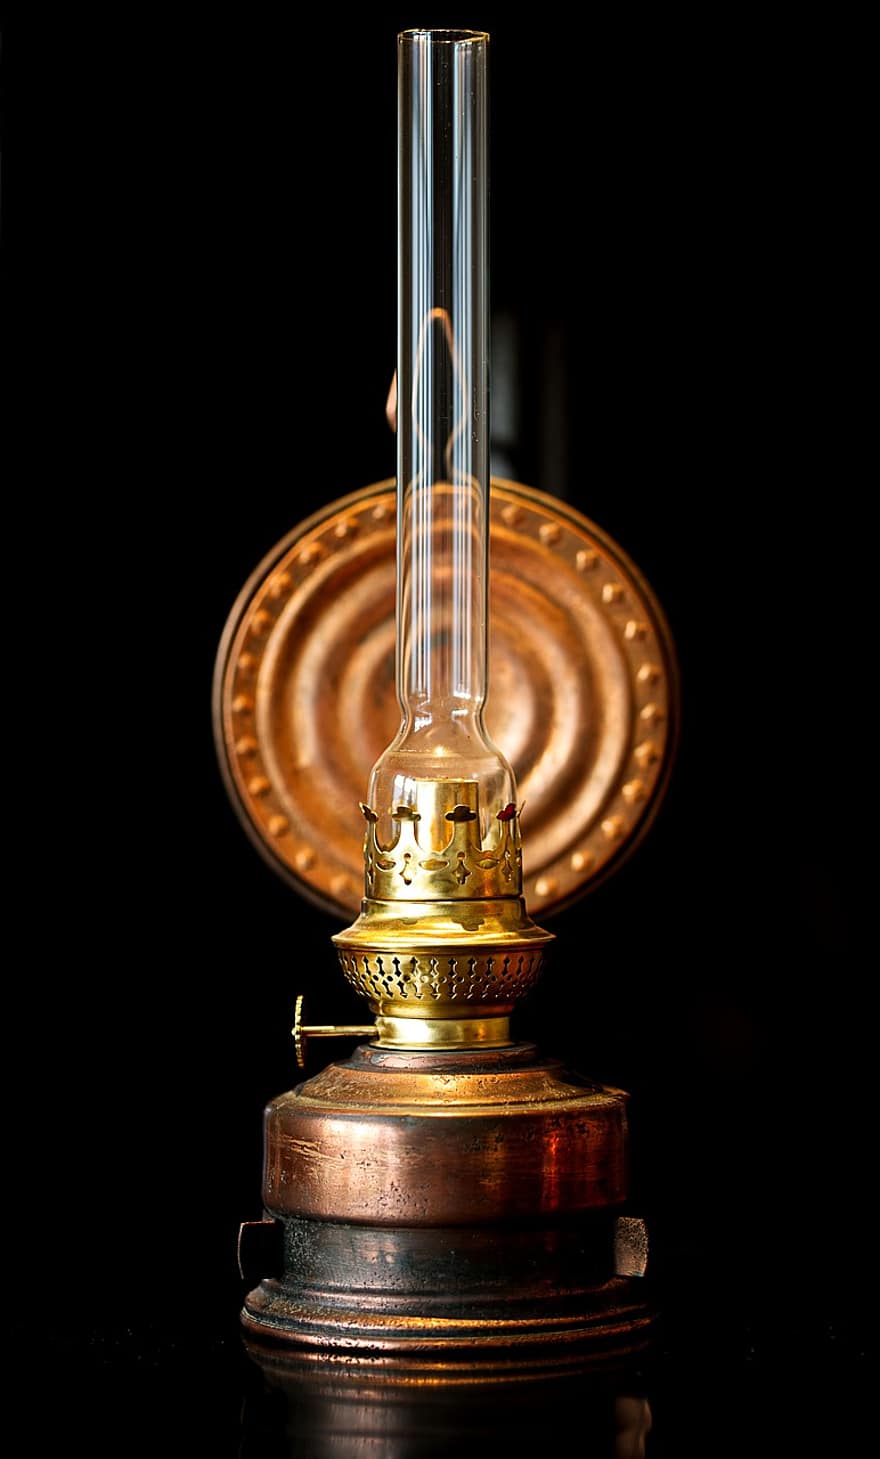 Медна маслена лампа, макро, украса, реколта, един обект, едър план, оборудване, стъкло, античен, старомоден, течност